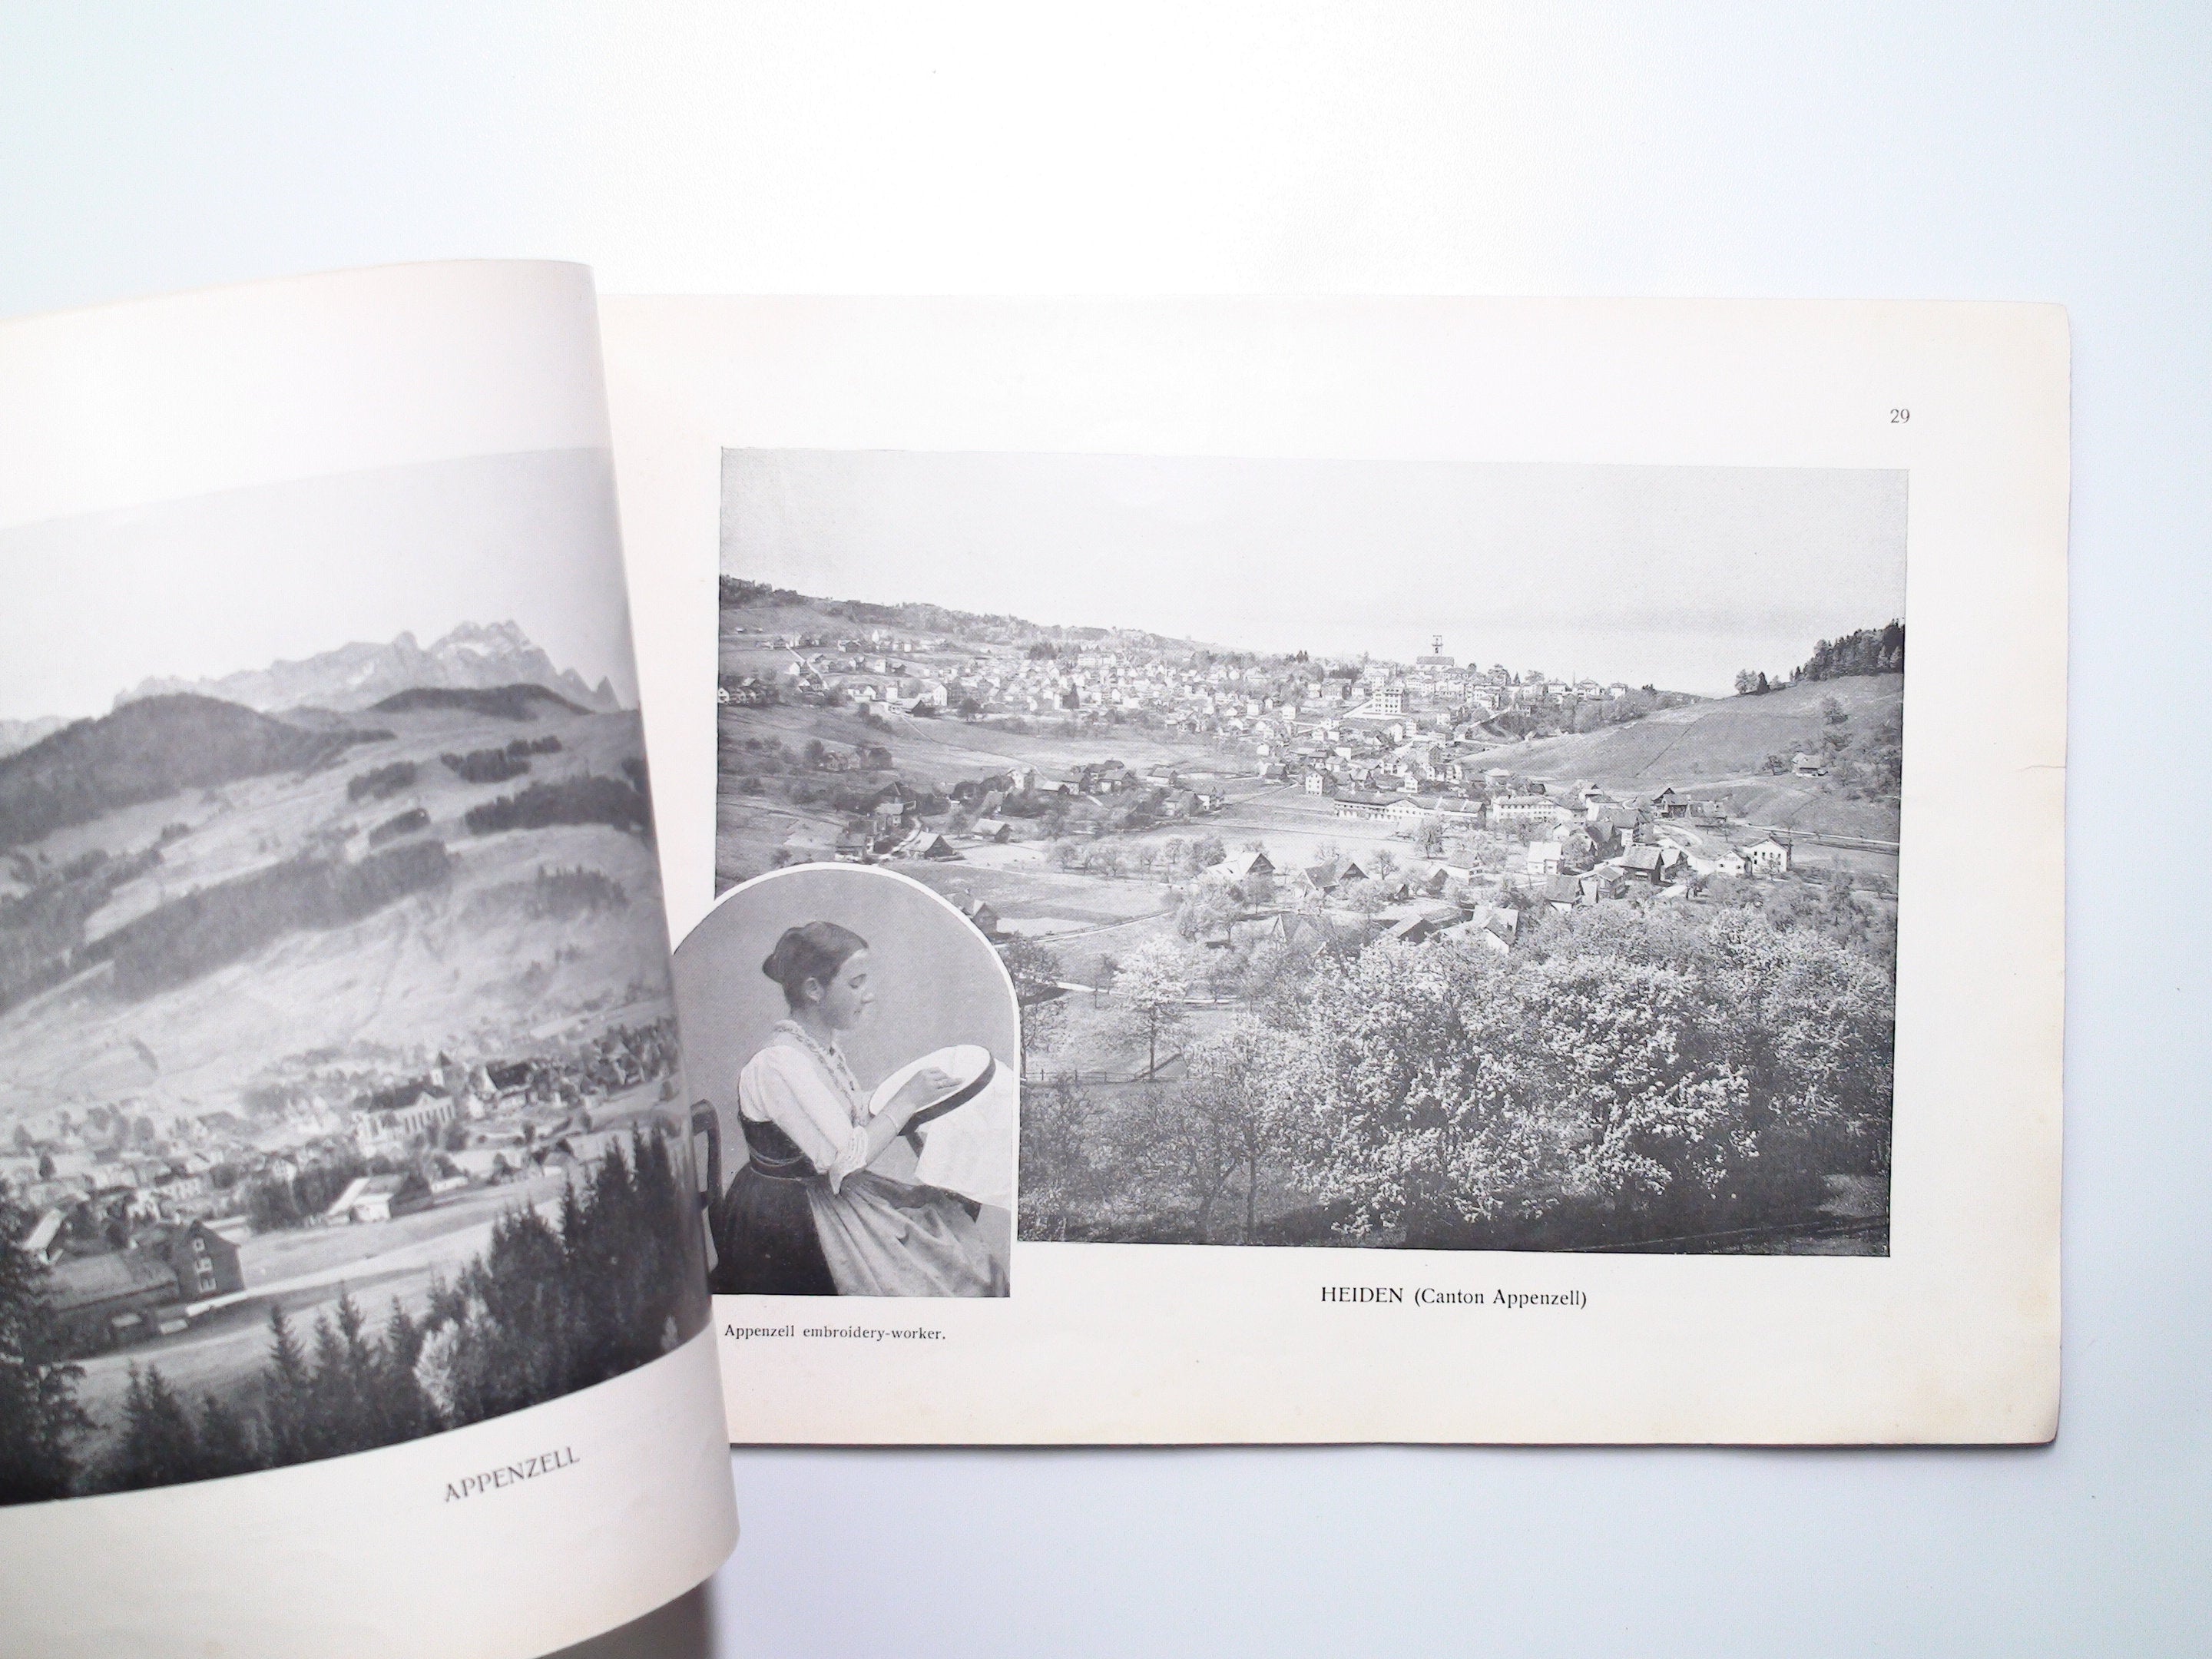 Switzerland Photo Album and Souvenir Book, by Schweizerische Bundesbahnen, SBB